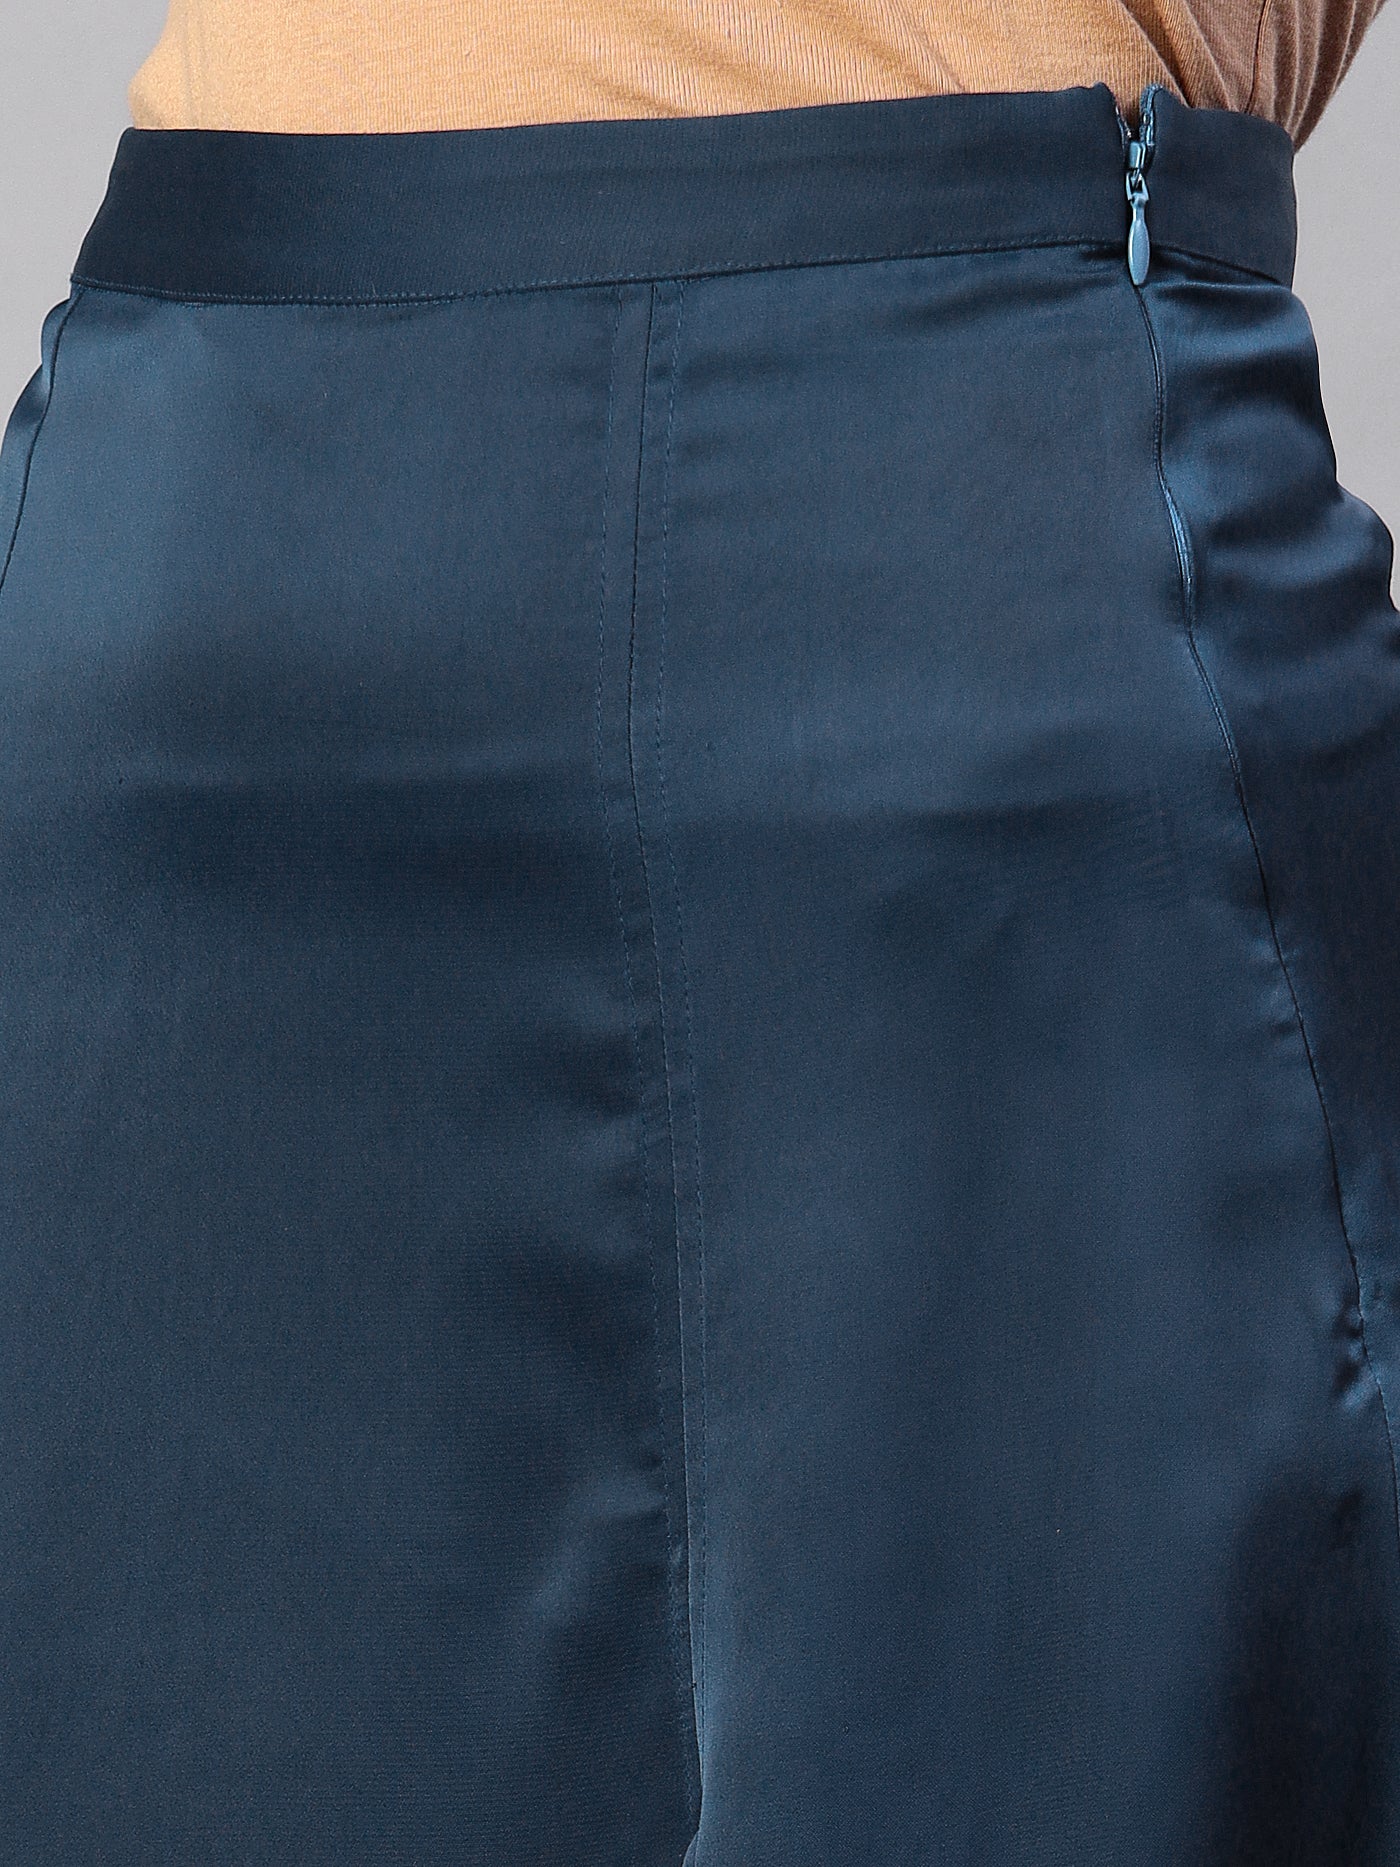 Front Slit Midi A-Line Skirt